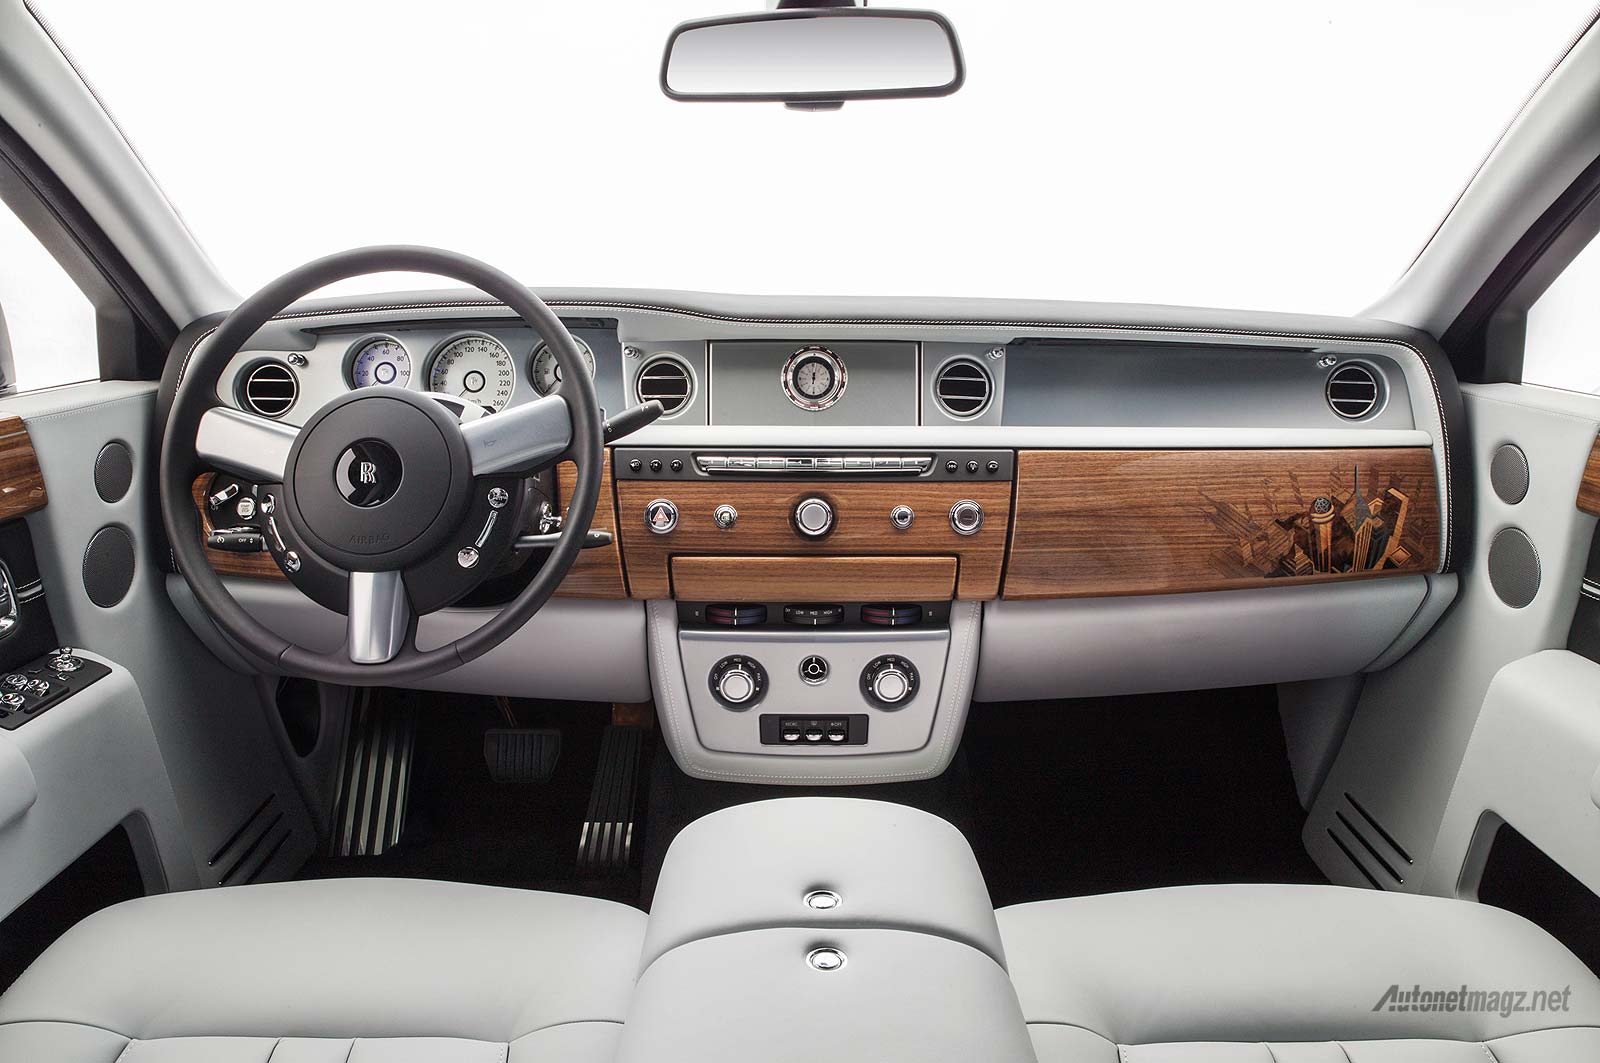 Berita, Interior daleman mobil paling mahal di dunia Rolls-Royce Phantom Metropolitan 2015: Rolls-Royce Phantom Metropolitan Collection Hanya Dibuat 20 Unit!